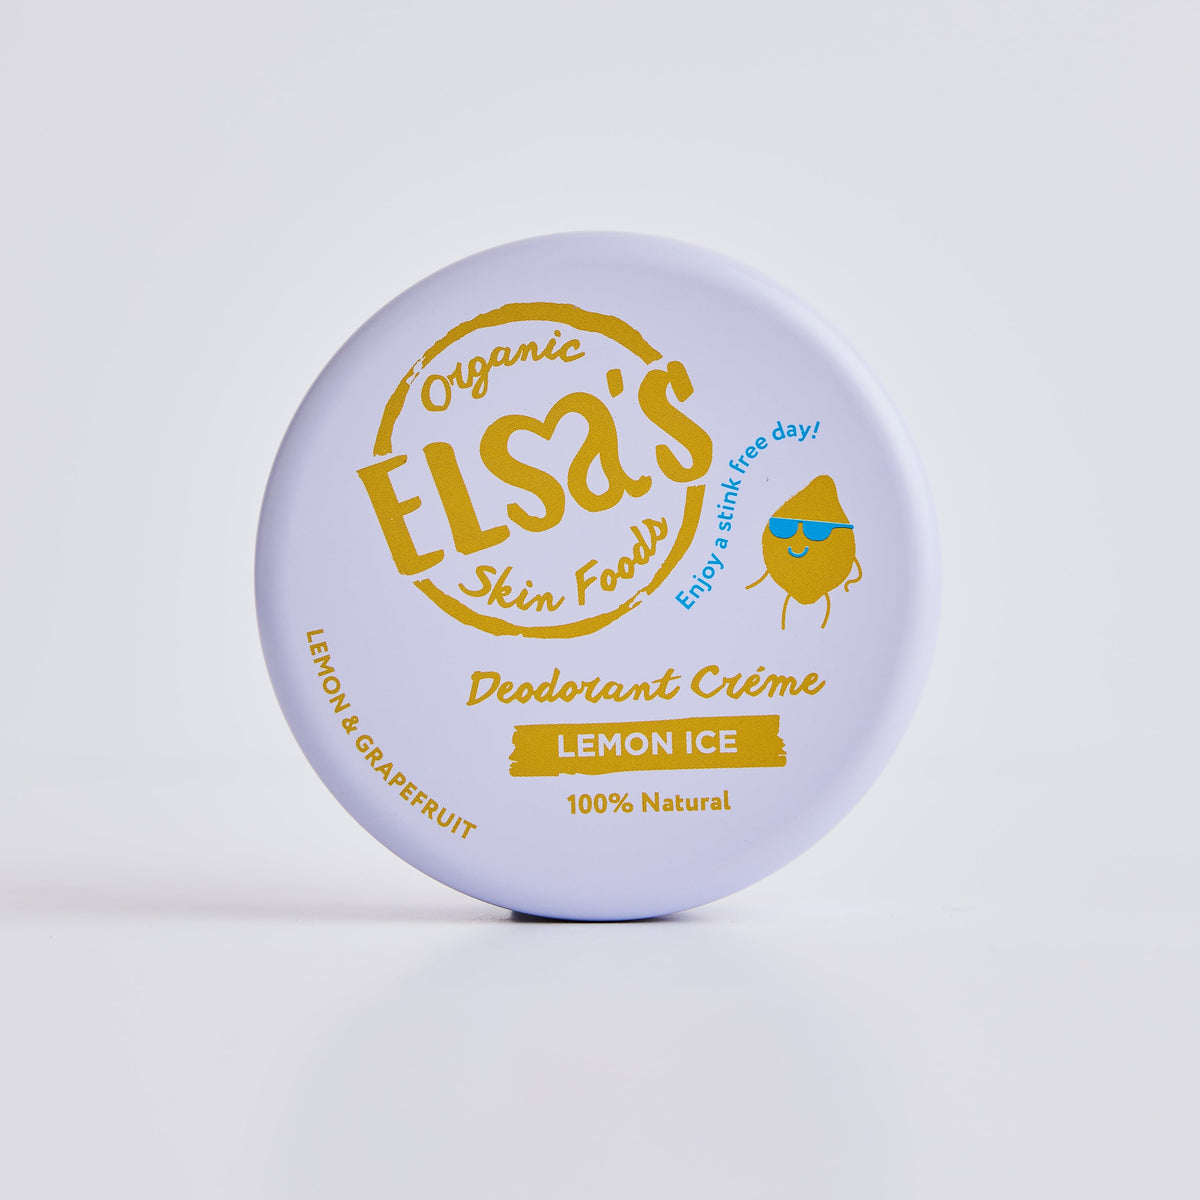 Natural Deodorant Cream - Lemon Ice